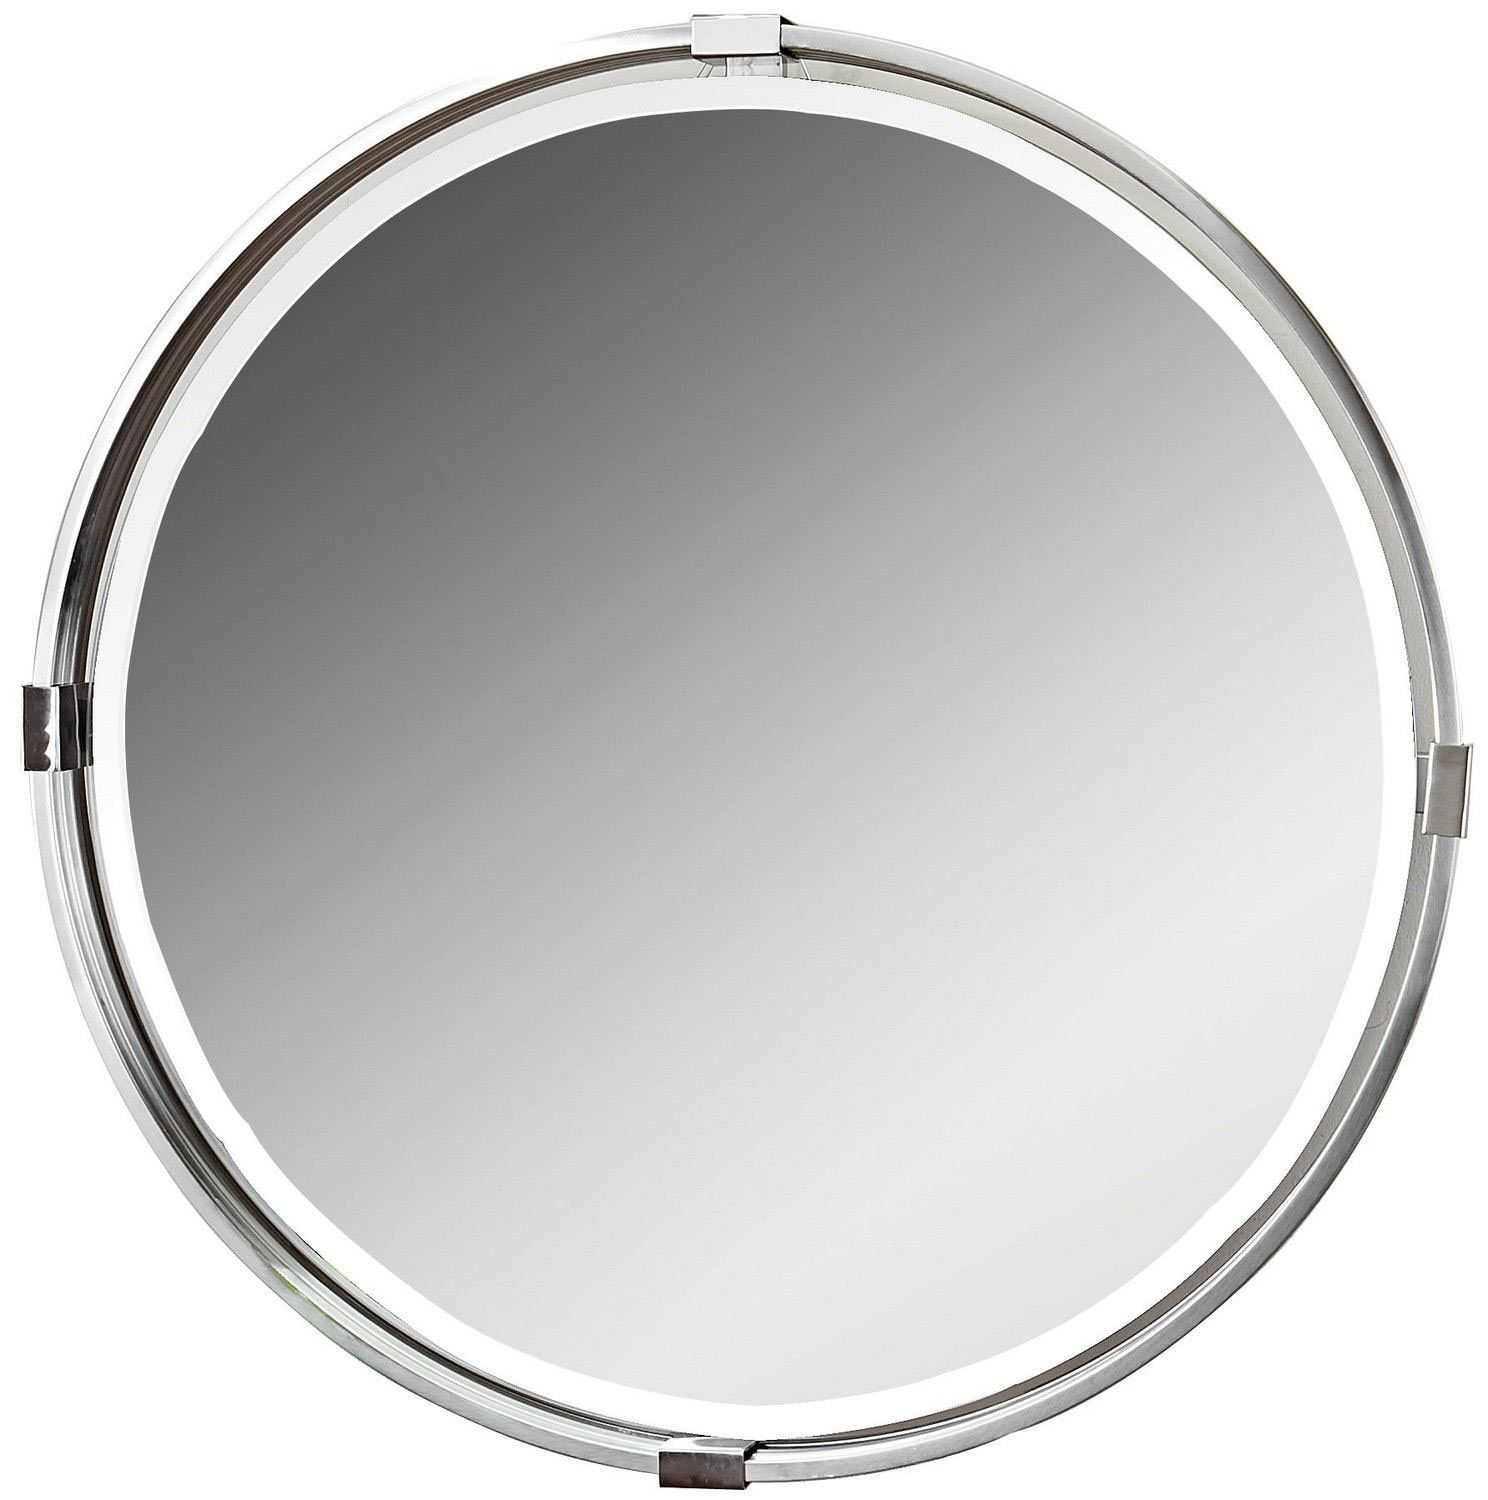 Uttermost Tazlina Round Mirror - Brushed Nickel